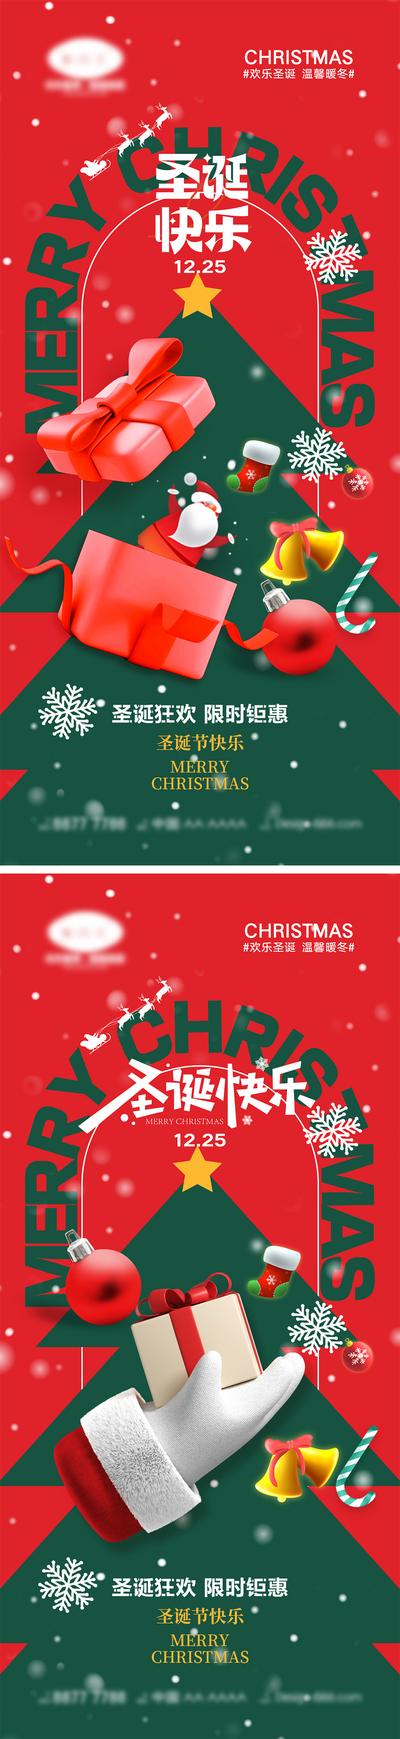 南门网 海报 西方节日 圣诞节 平安夜 圣诞老人 礼物 麋鹿 圣诞树 下雪